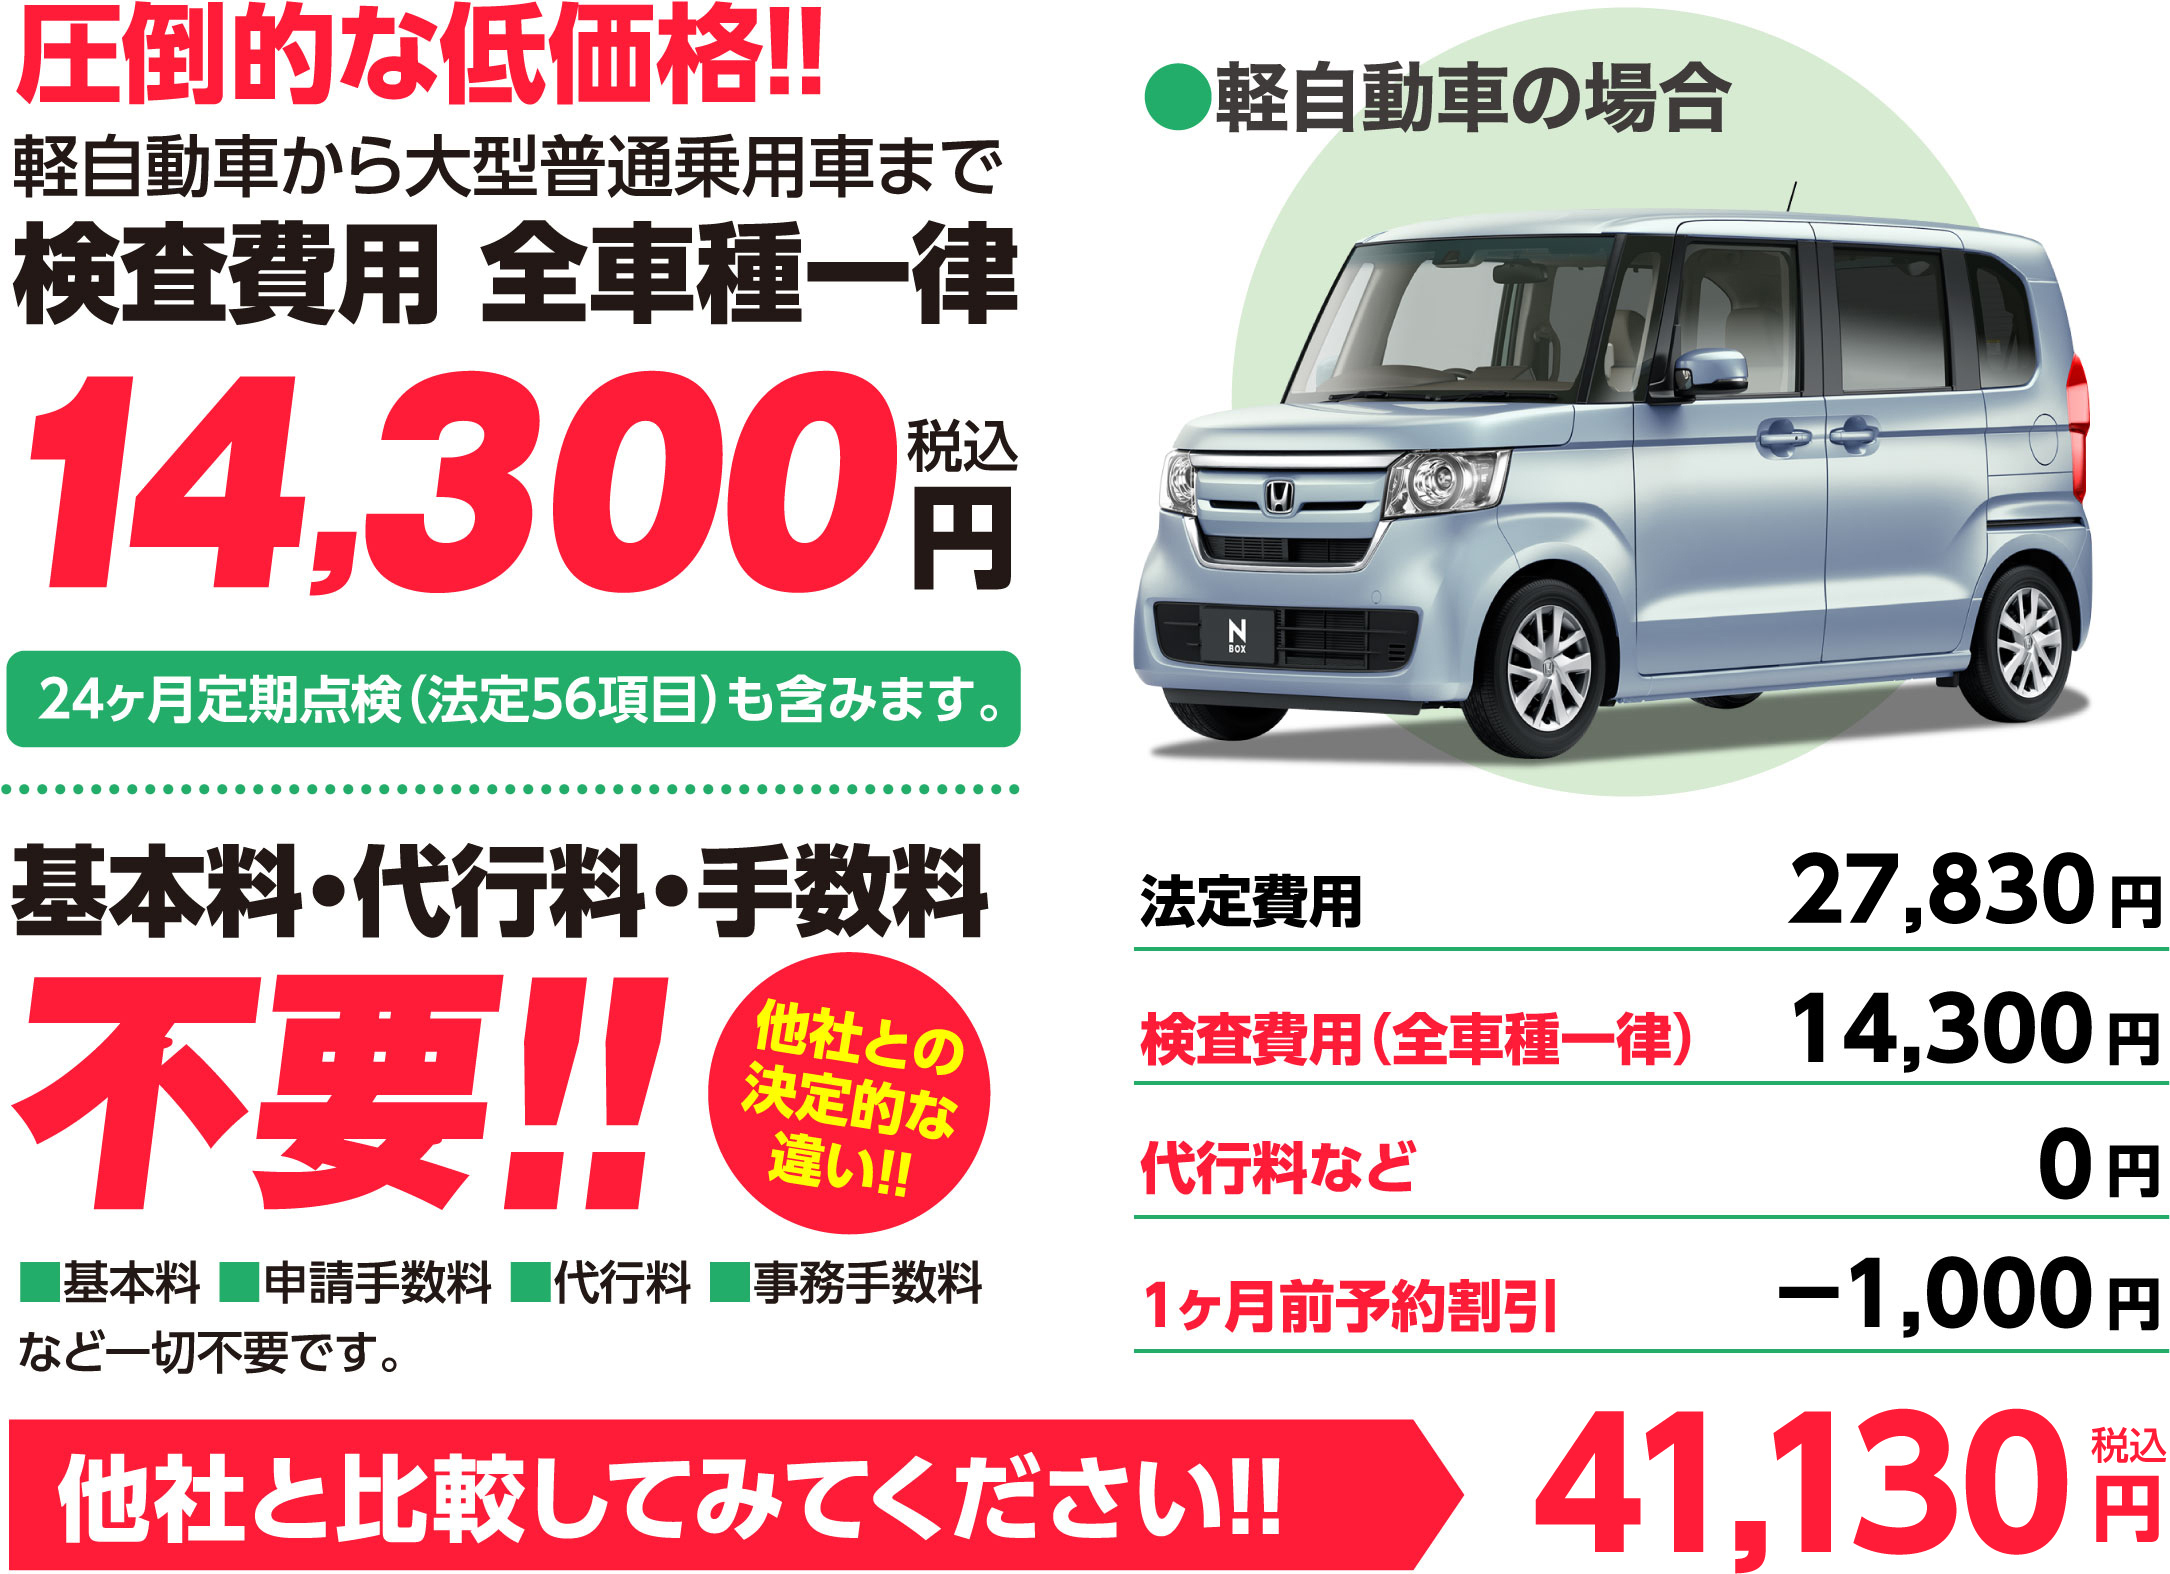 圧倒的な低価格!!軽自動車から大型普通乗用車まで検査費用 全車種一律13,000円税別